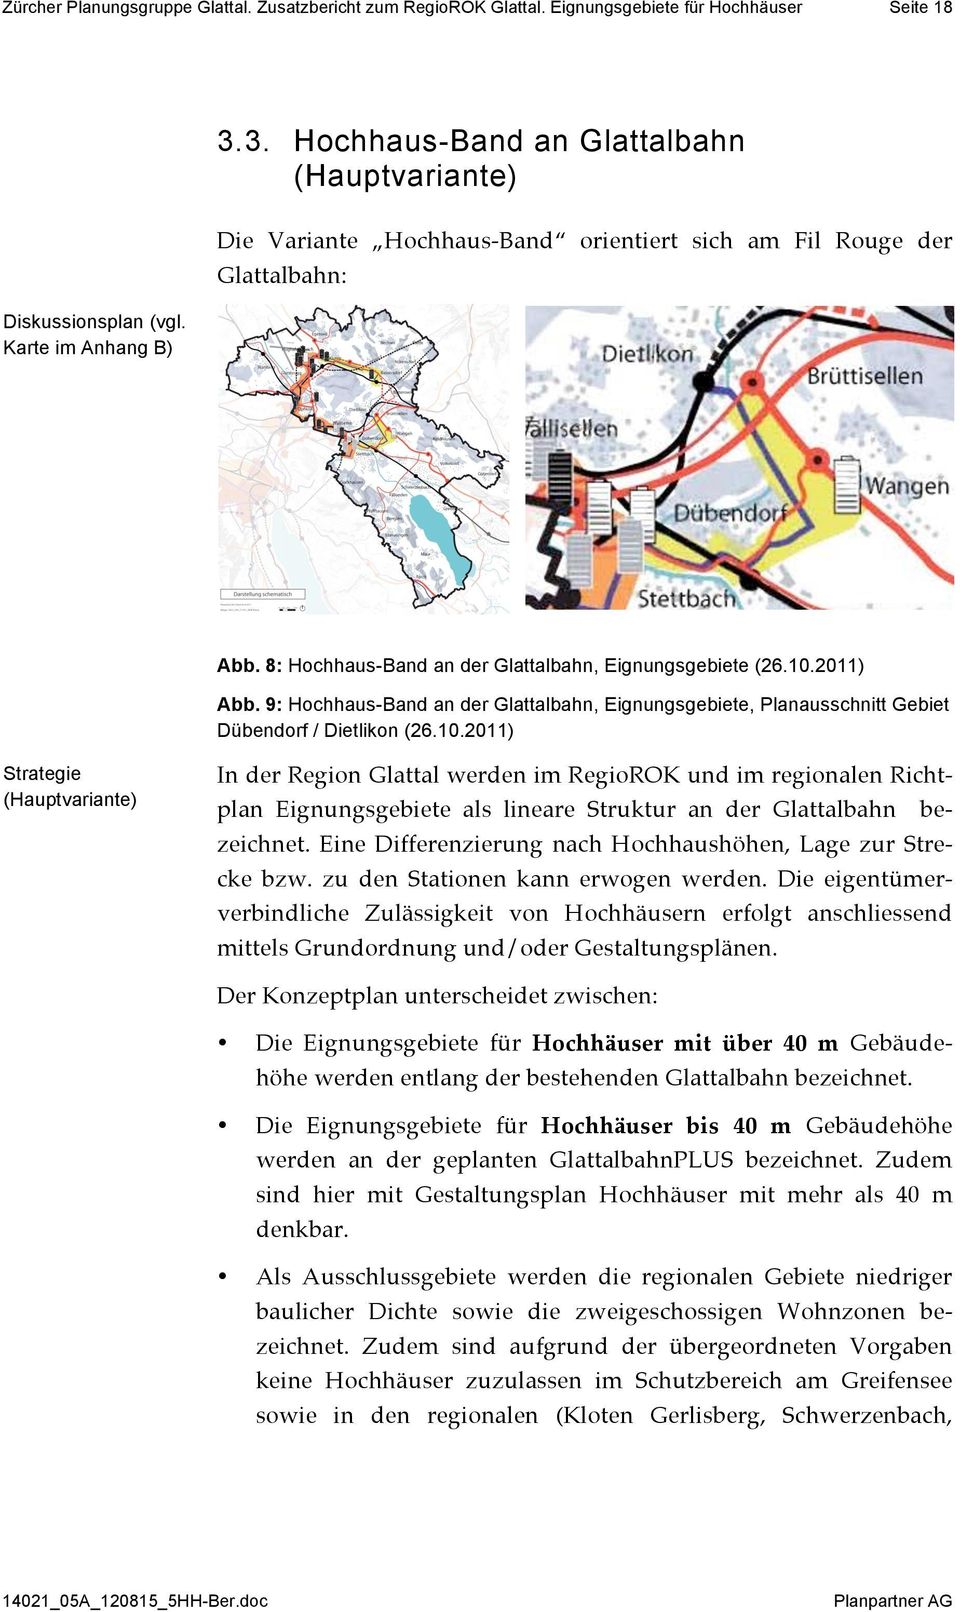 9: Hochhaus-Band an der Glattalbahn, Eignungsgebiete, Planausschnitt Gebiet Dübendorf / Dietlikon (26.10.